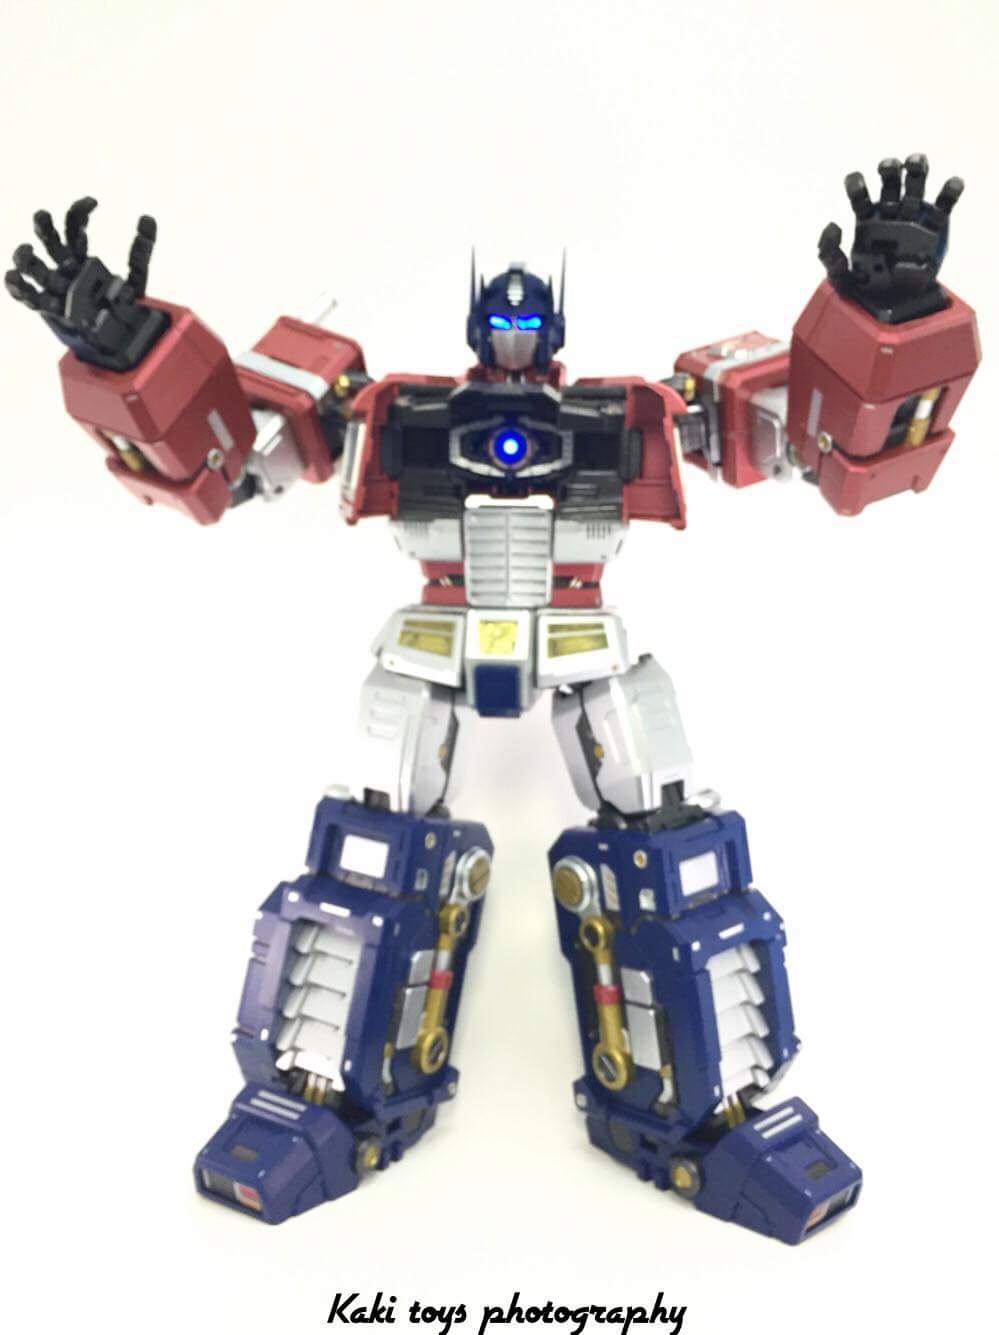 Figurines Transformers G1 (articulé, non transformable) ― Par ThreeZero, R.E.D, Super7, Toys Alliance, etc - Page 4 MygnqAxk